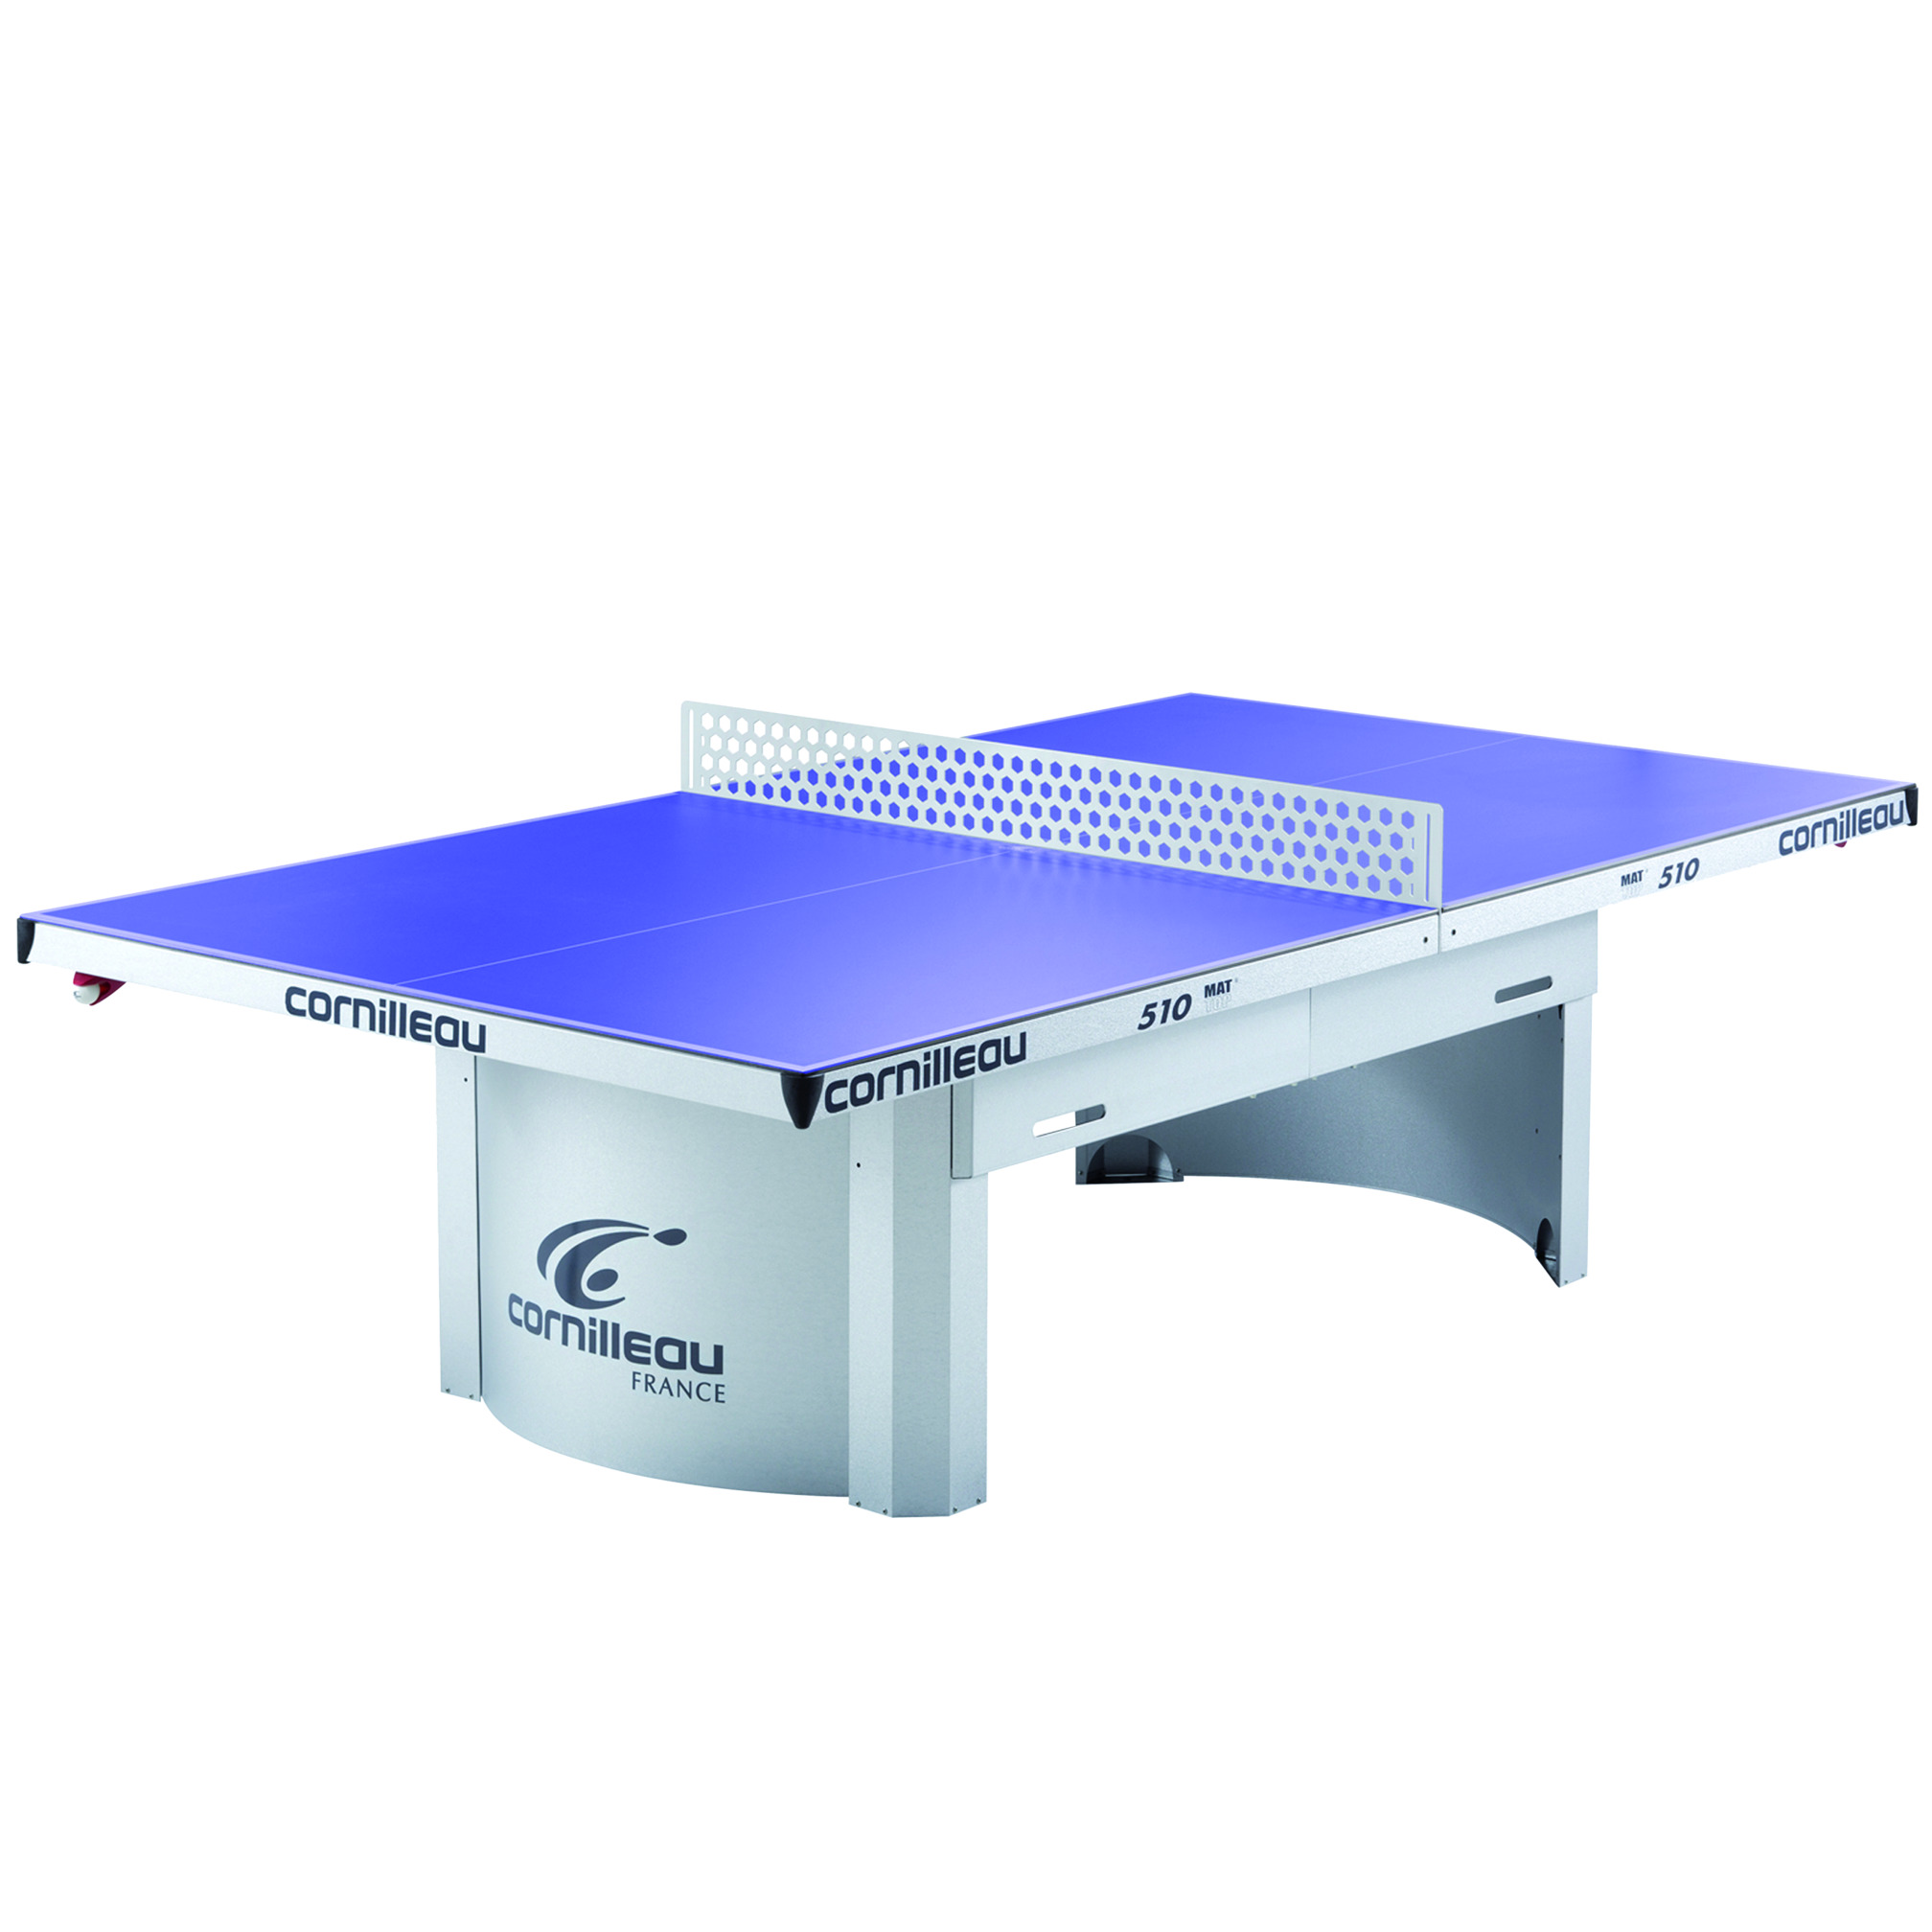 Table de tennis Cornilleau Pro 510